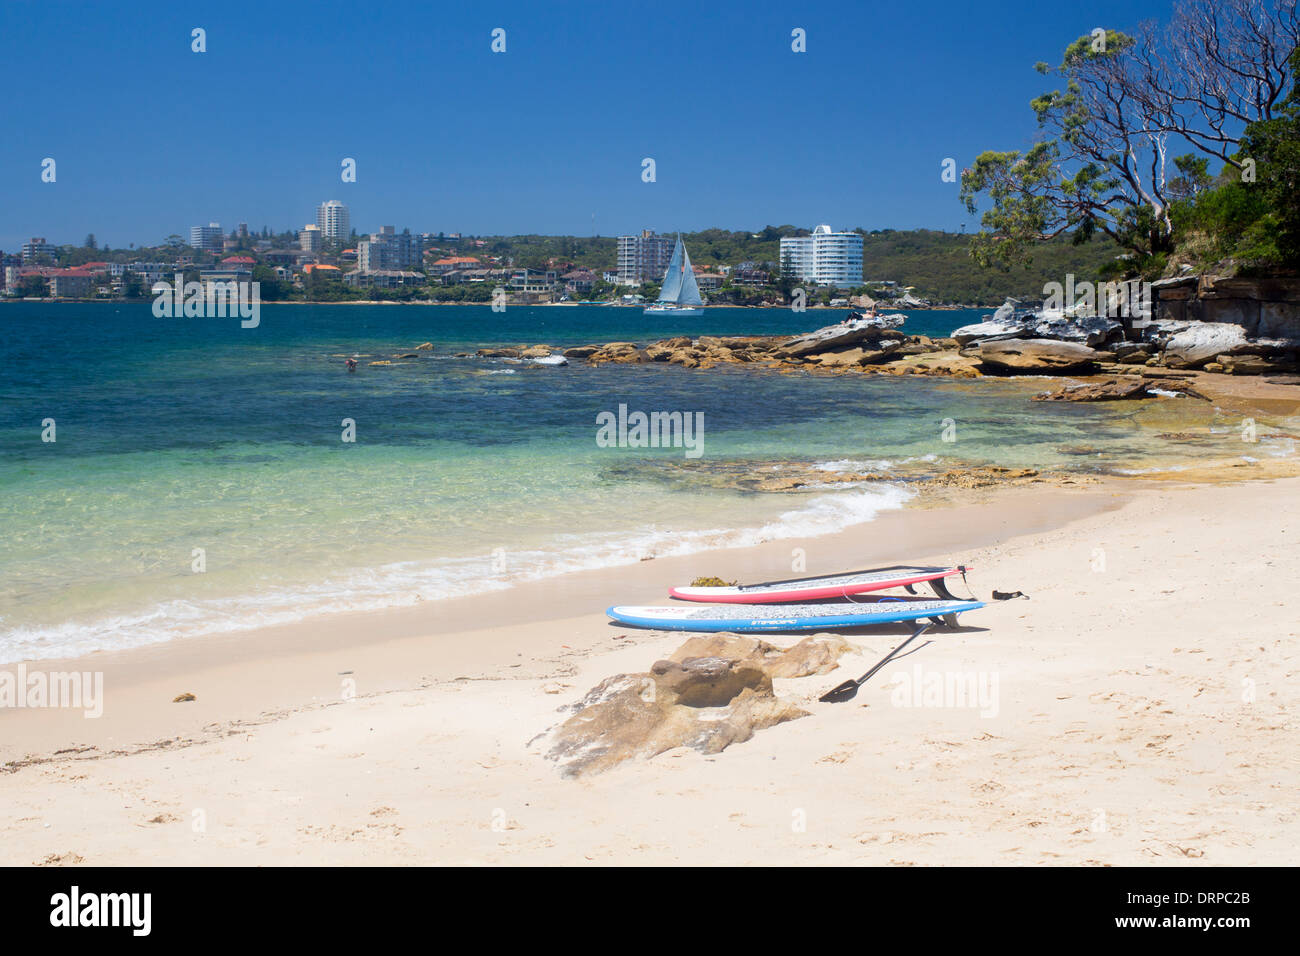 Reef Beach North Harbour à l'ensemble de Manly avec planches et paddleboards sur du sable Sydney NSW Australie Nouvelle Galles du Sud Banque D'Images